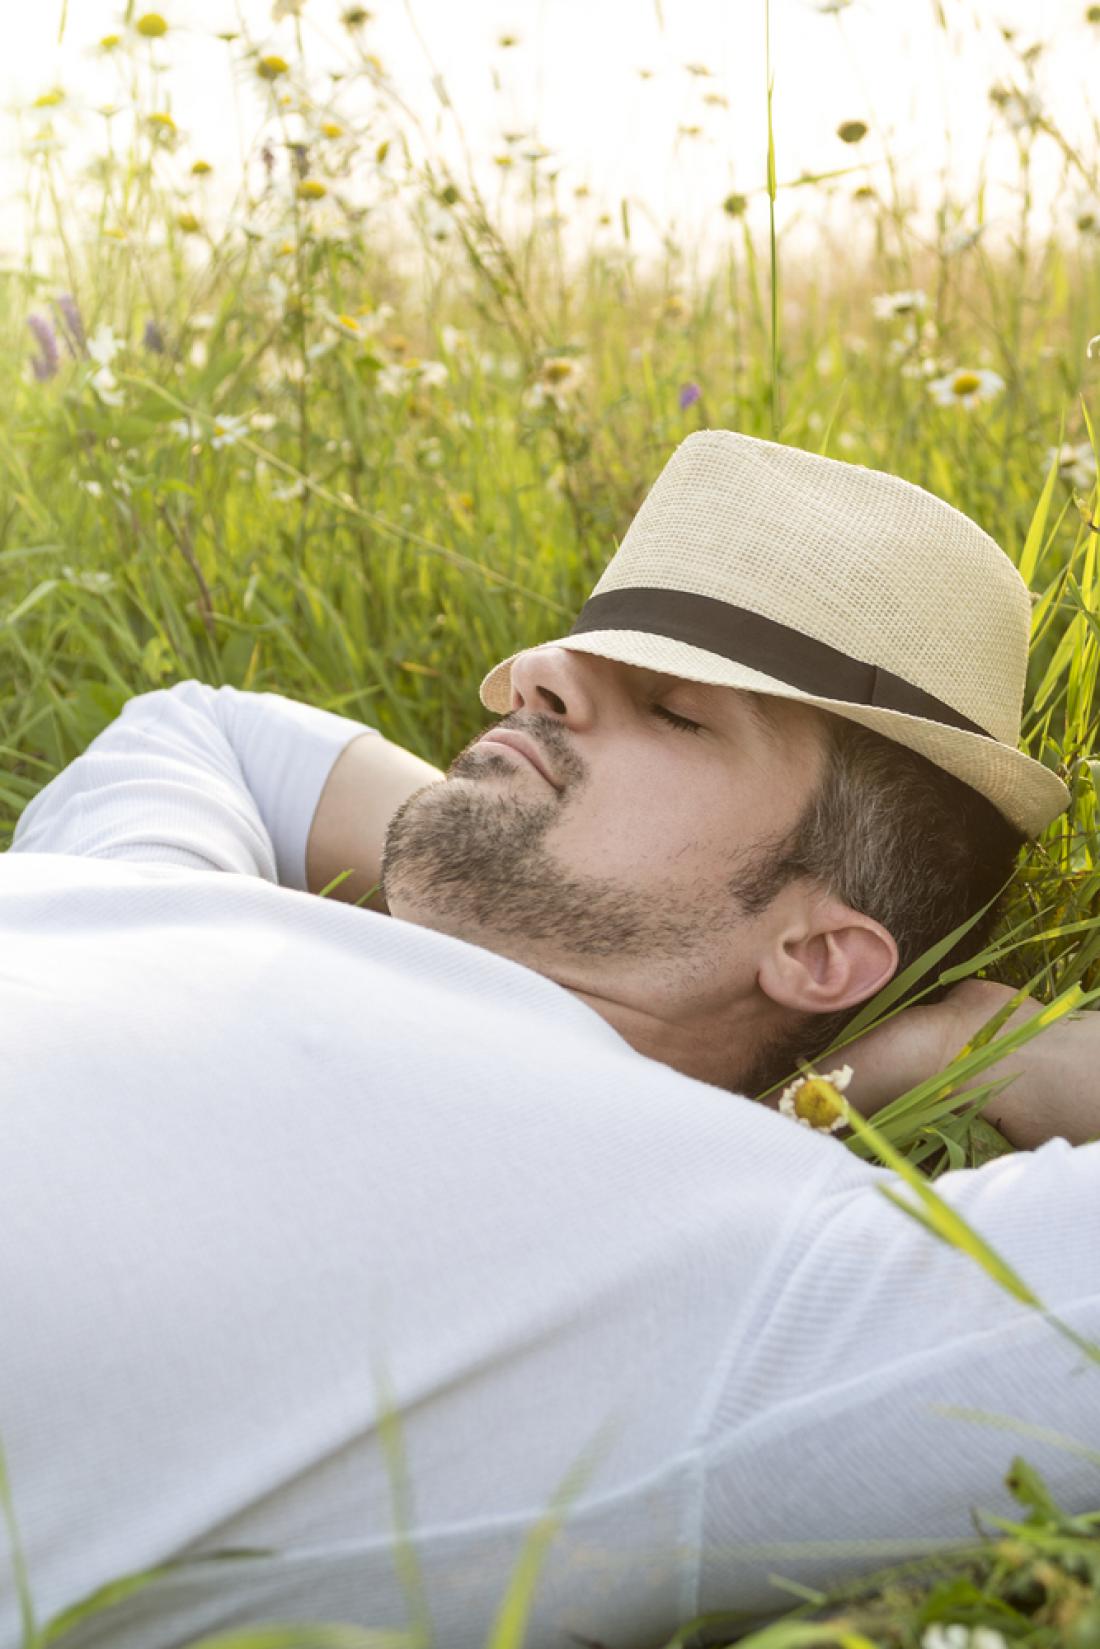 Možgani ljudi, ki redno dremajo, so večji za 15 kubičnih centimetrov. FOTO: Lopolo/Shutterstock